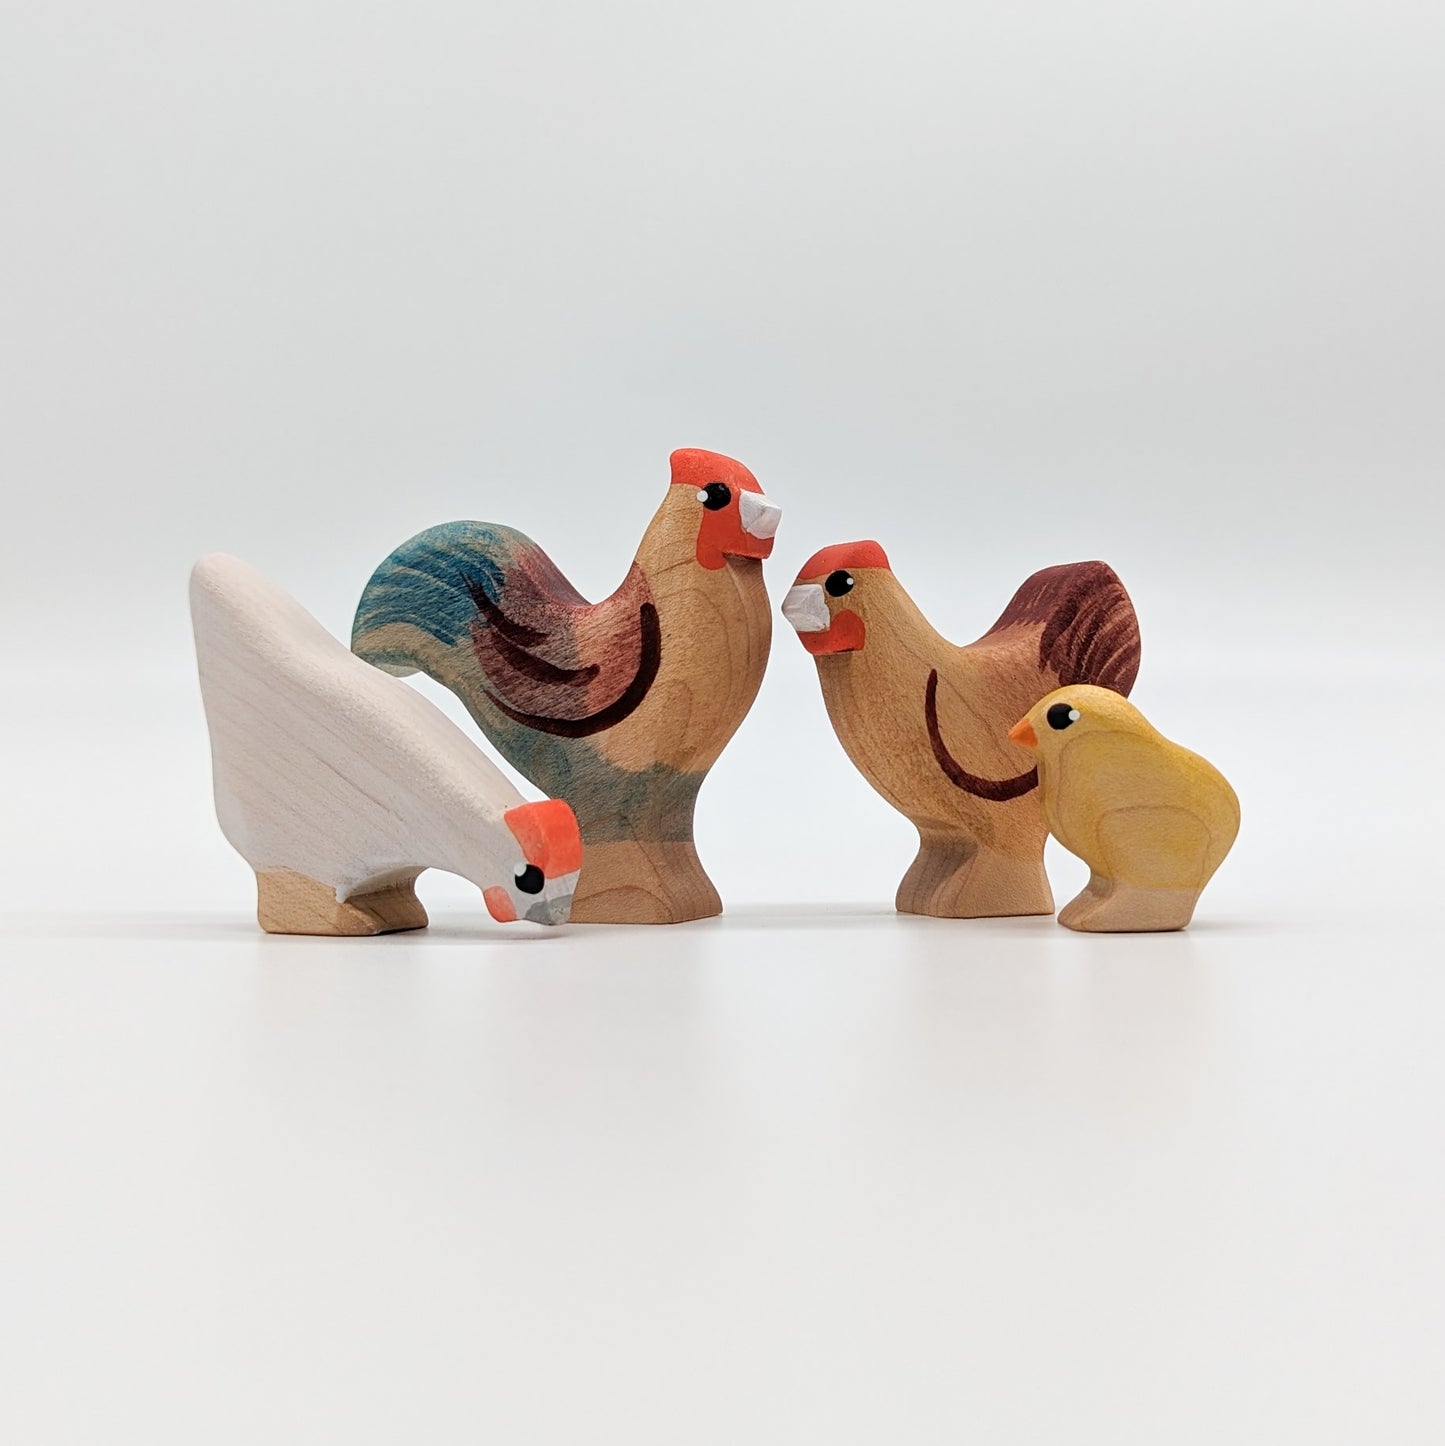 Chicken Standing Wooden Toy